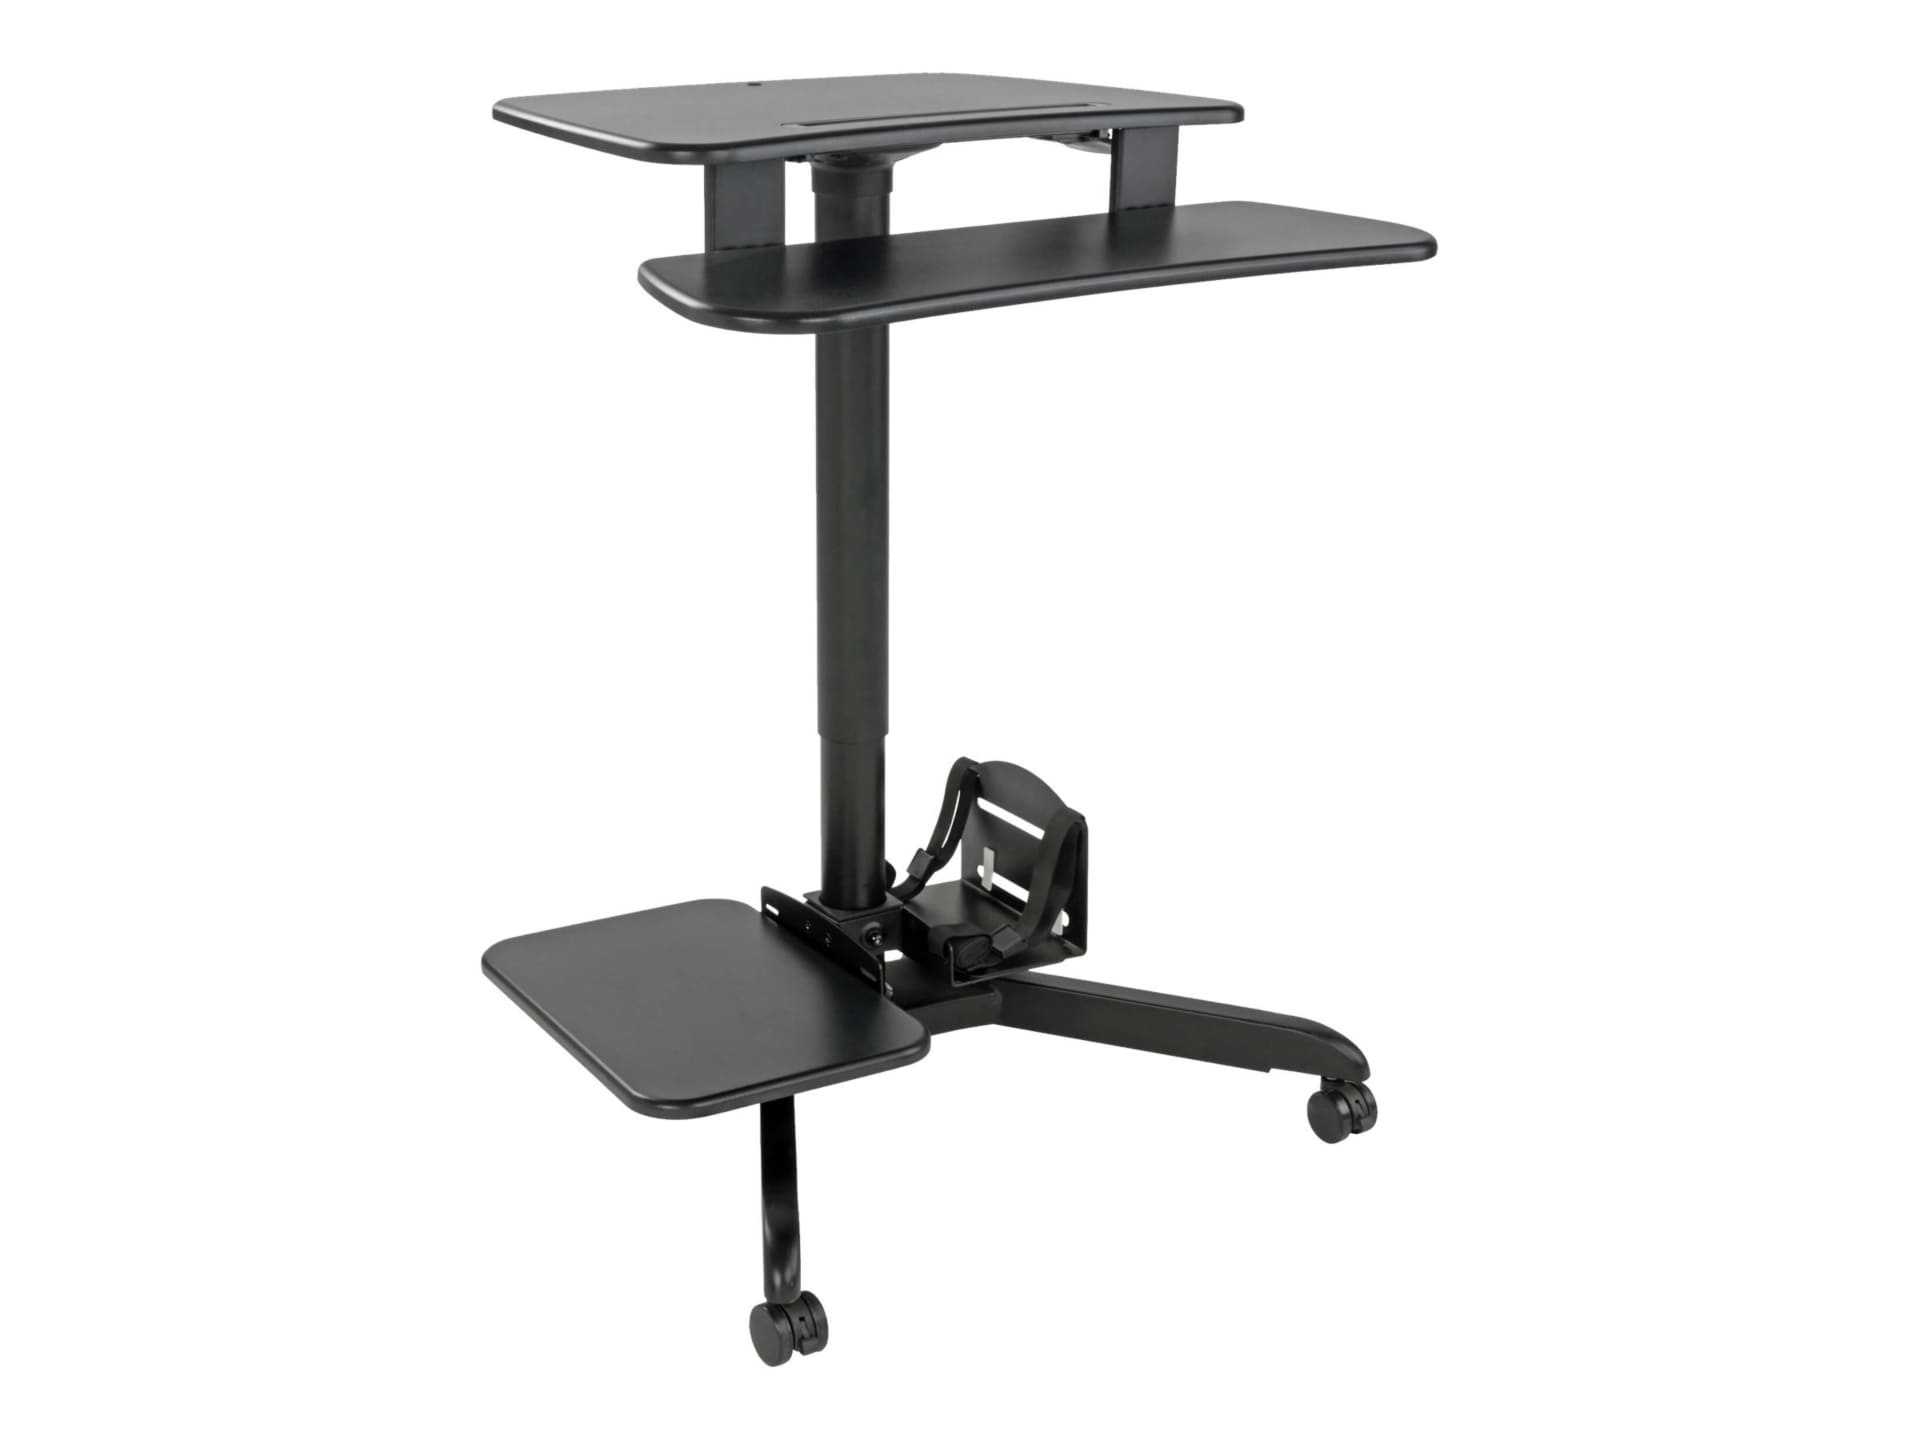 Tripp Lite Mobile Workstation Standing Desk Rolling Cart Height-Adjustable